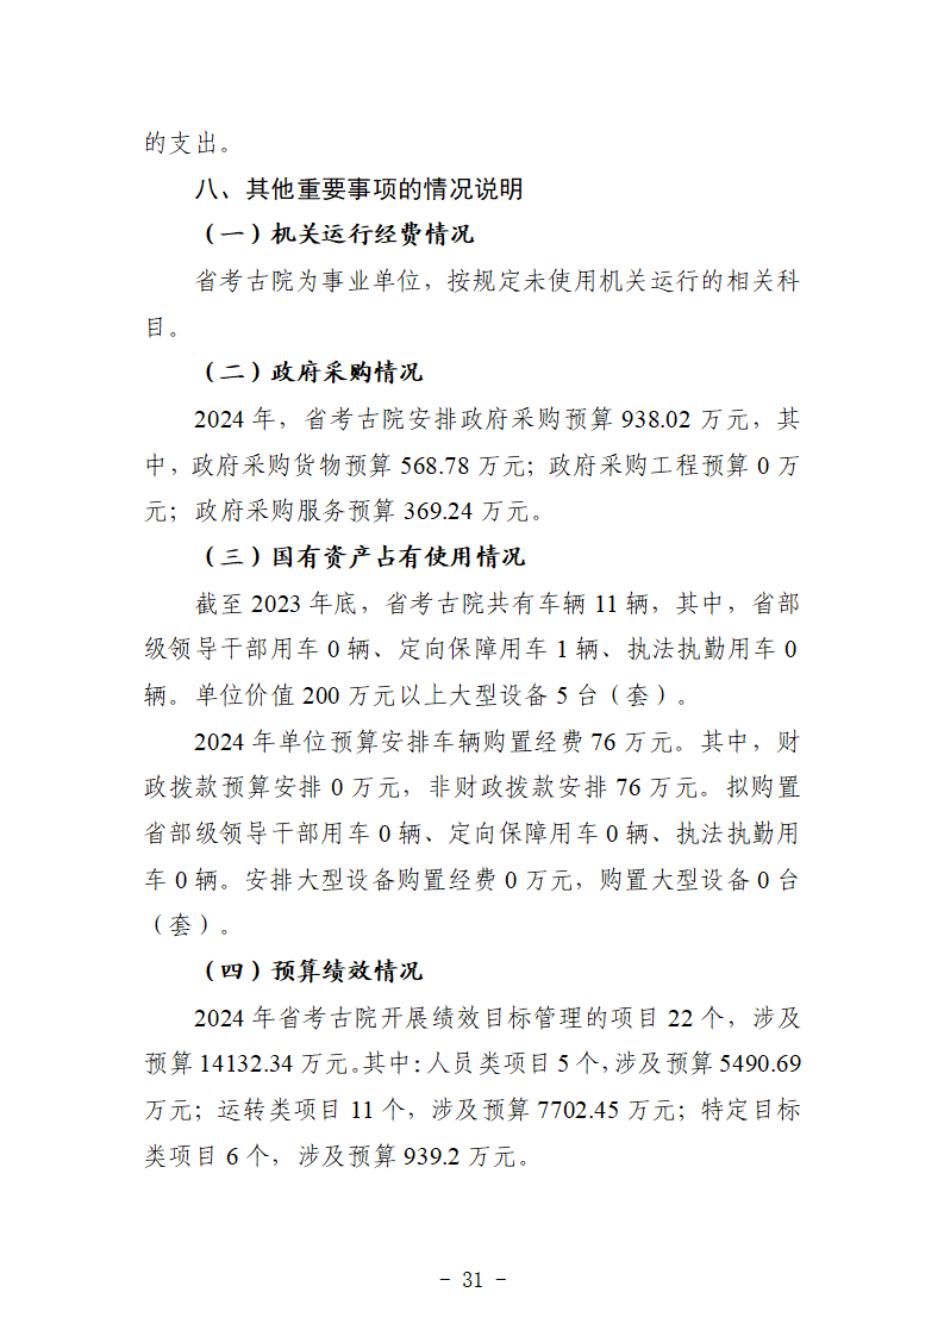 省考古院2024年四川省省级单位预算公开模板(3.14)_32.jpg